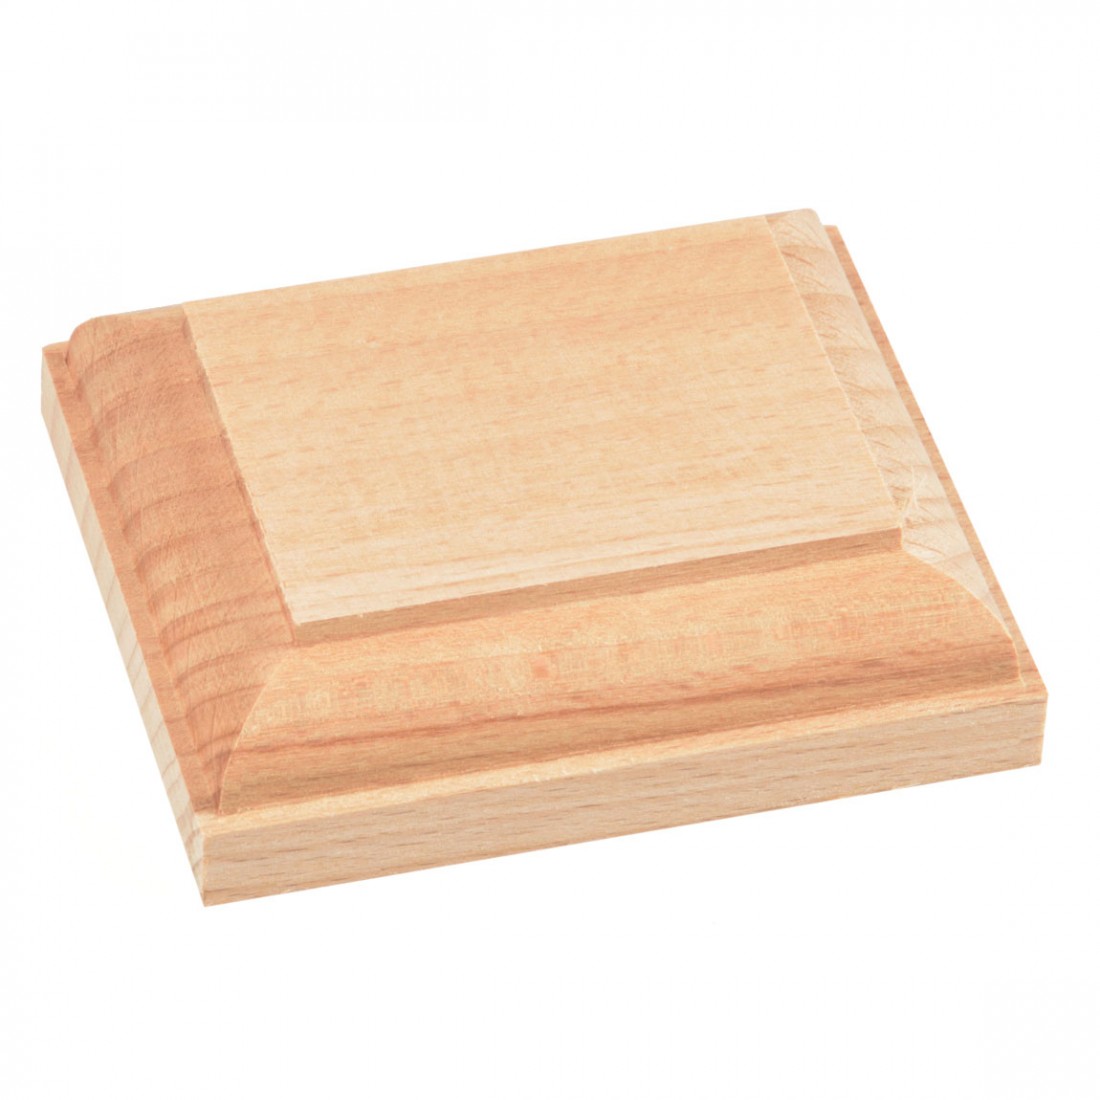 Amati Model - Socle bois mm.70x60 - Supports bois précieux